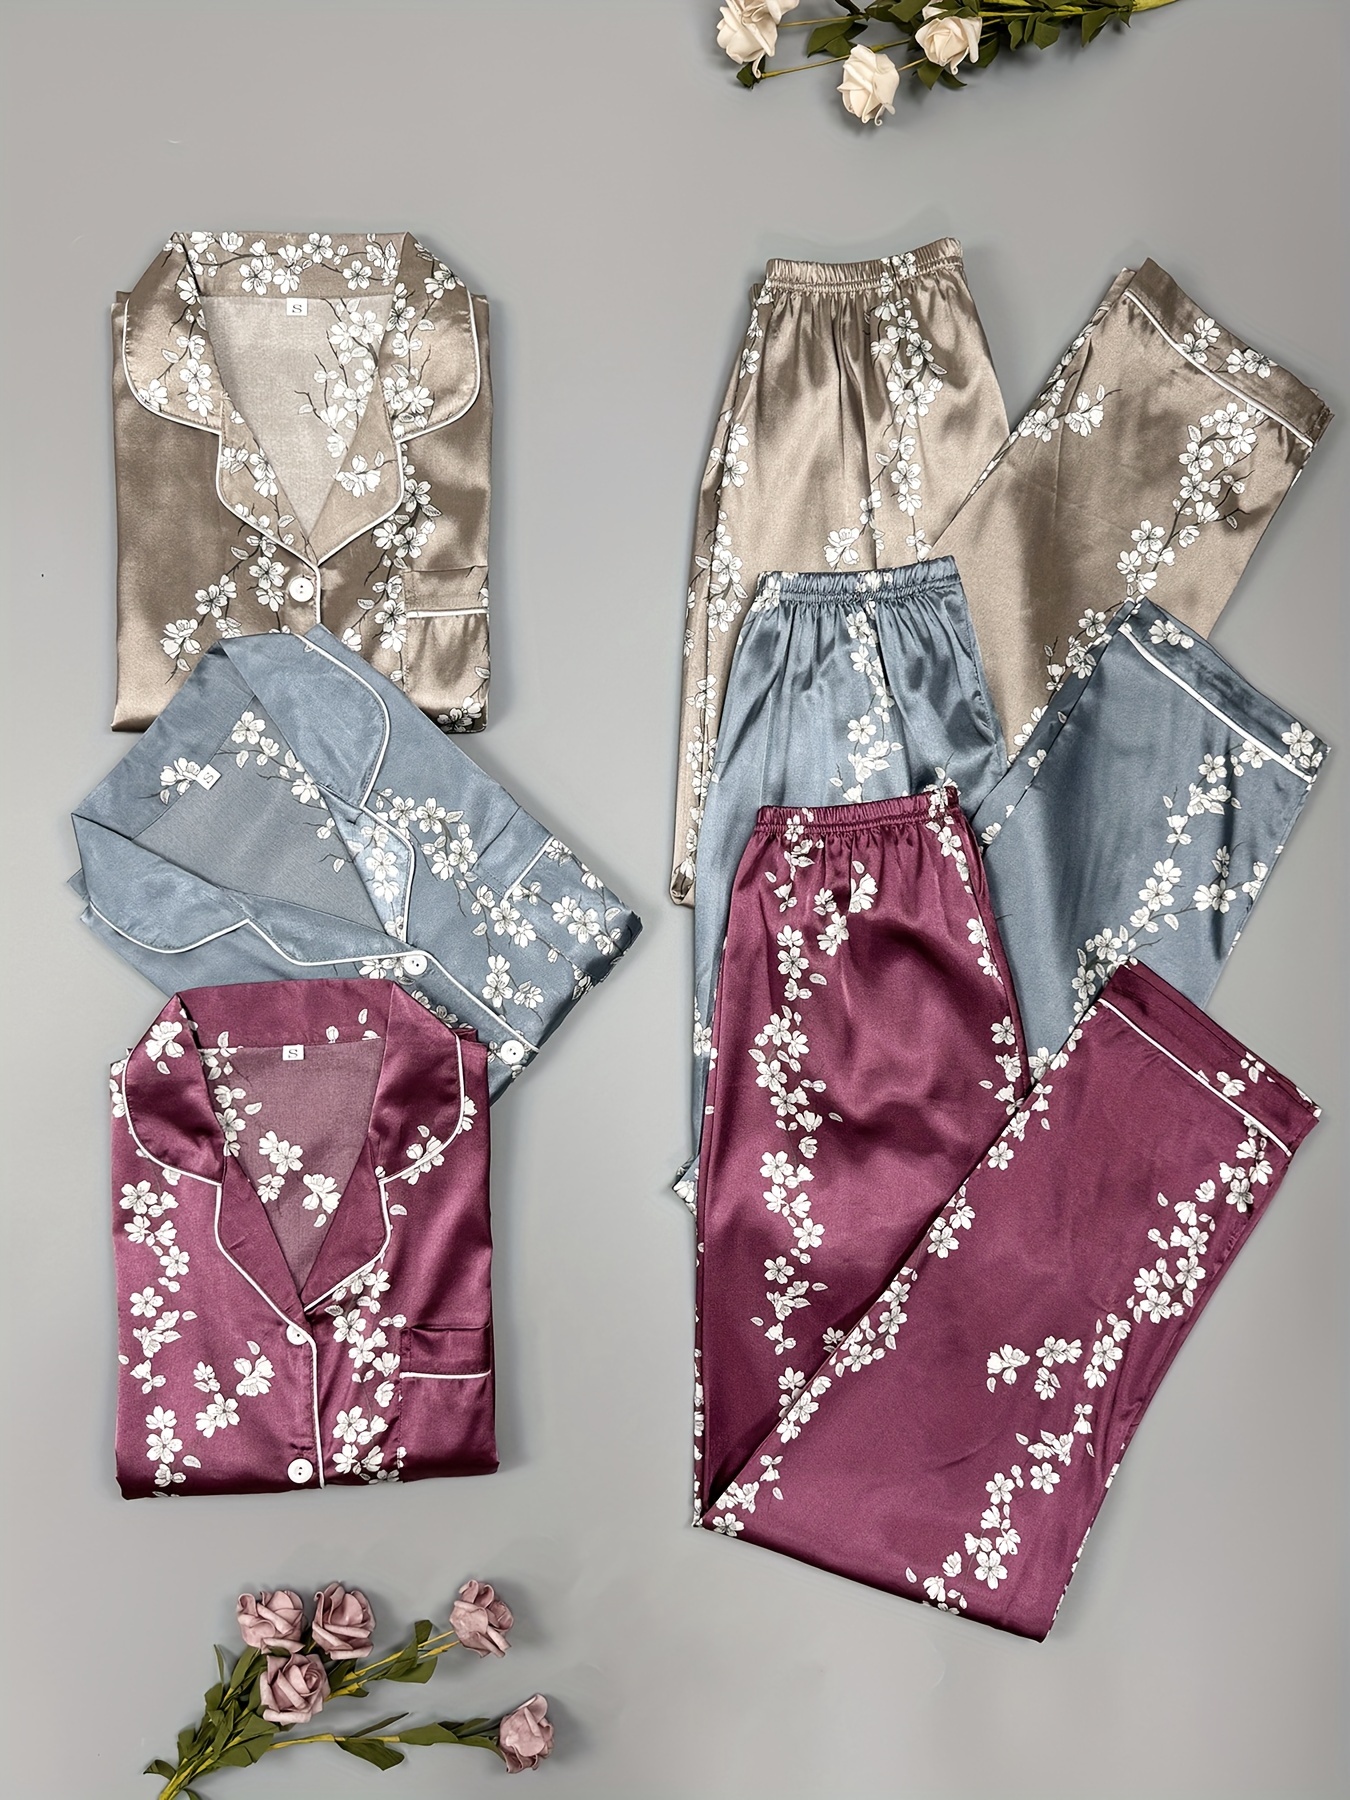 Floral Print Satin Pajama Set Casual Long Sleeve Button Top - Temu